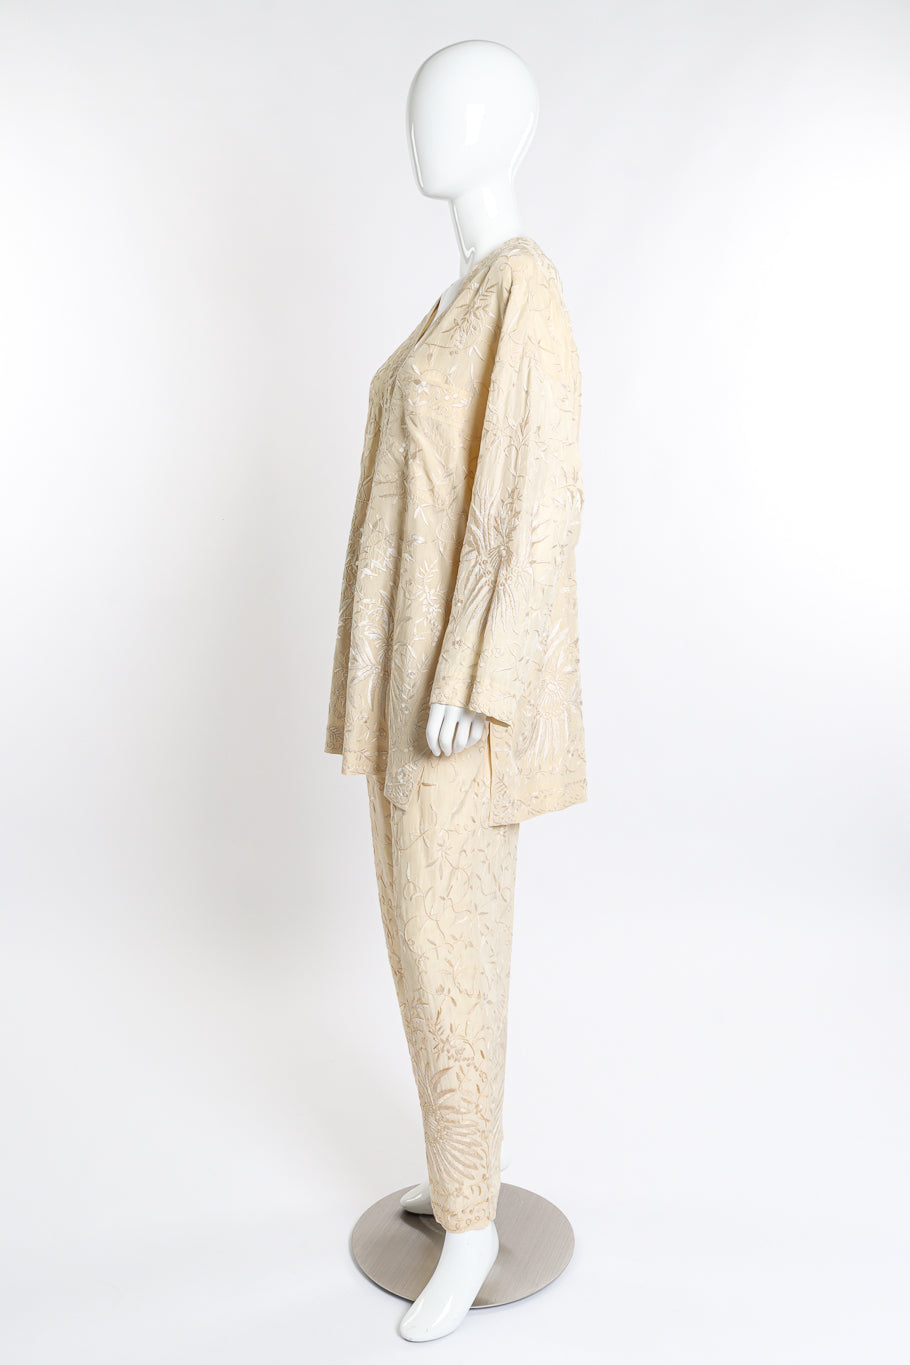 Vintage Donna Karan Embroidered Top & Pant Set side on mannequin @recess la